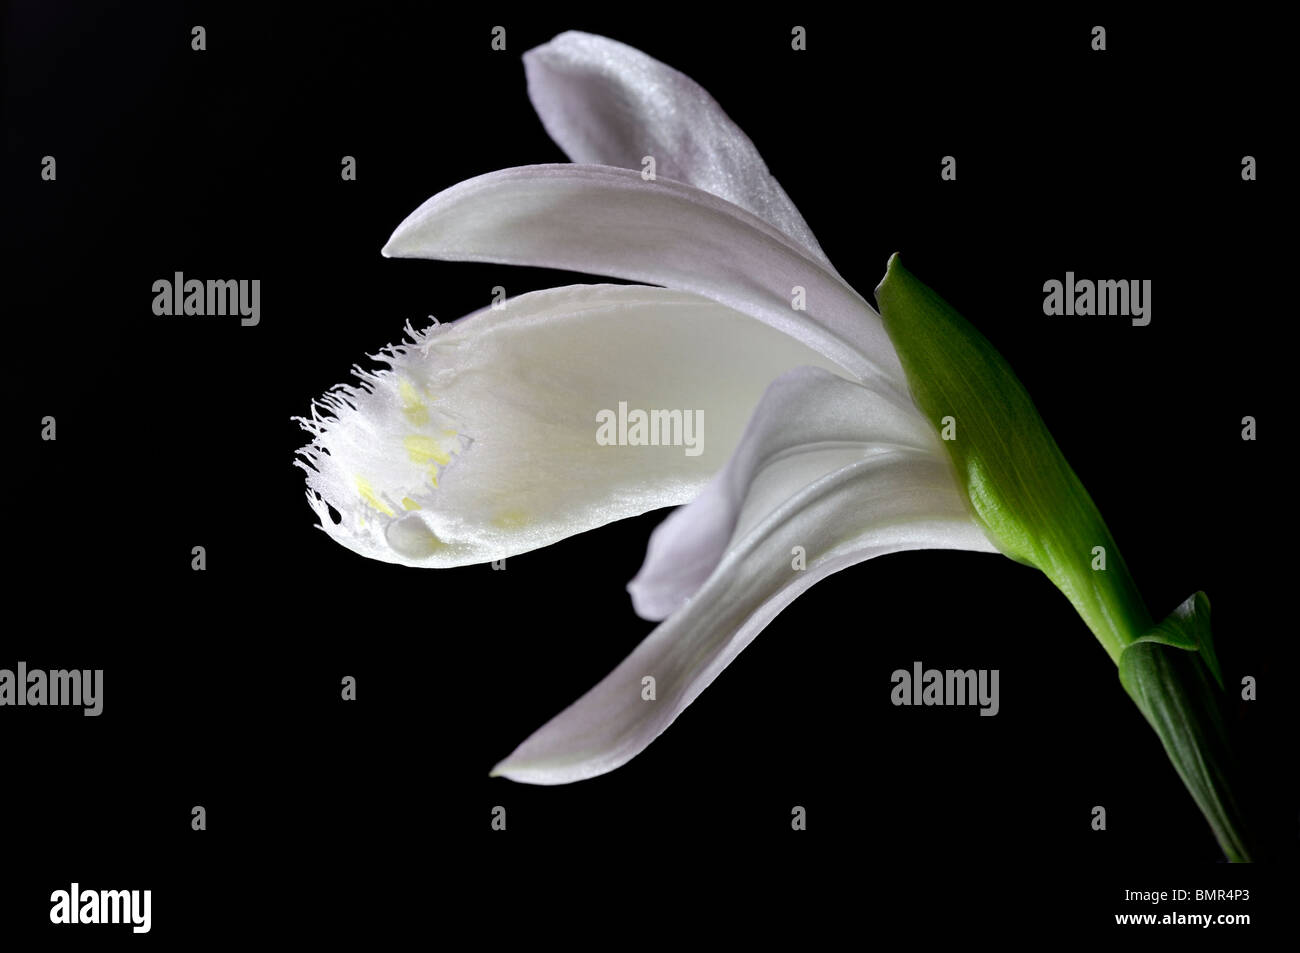 Pleione Formosana Snowcap Fensterbank Orchidee Blume Pflanze weiße Reihe Kontrast kontrastierenden schwarzen Hintergrund Stockfoto